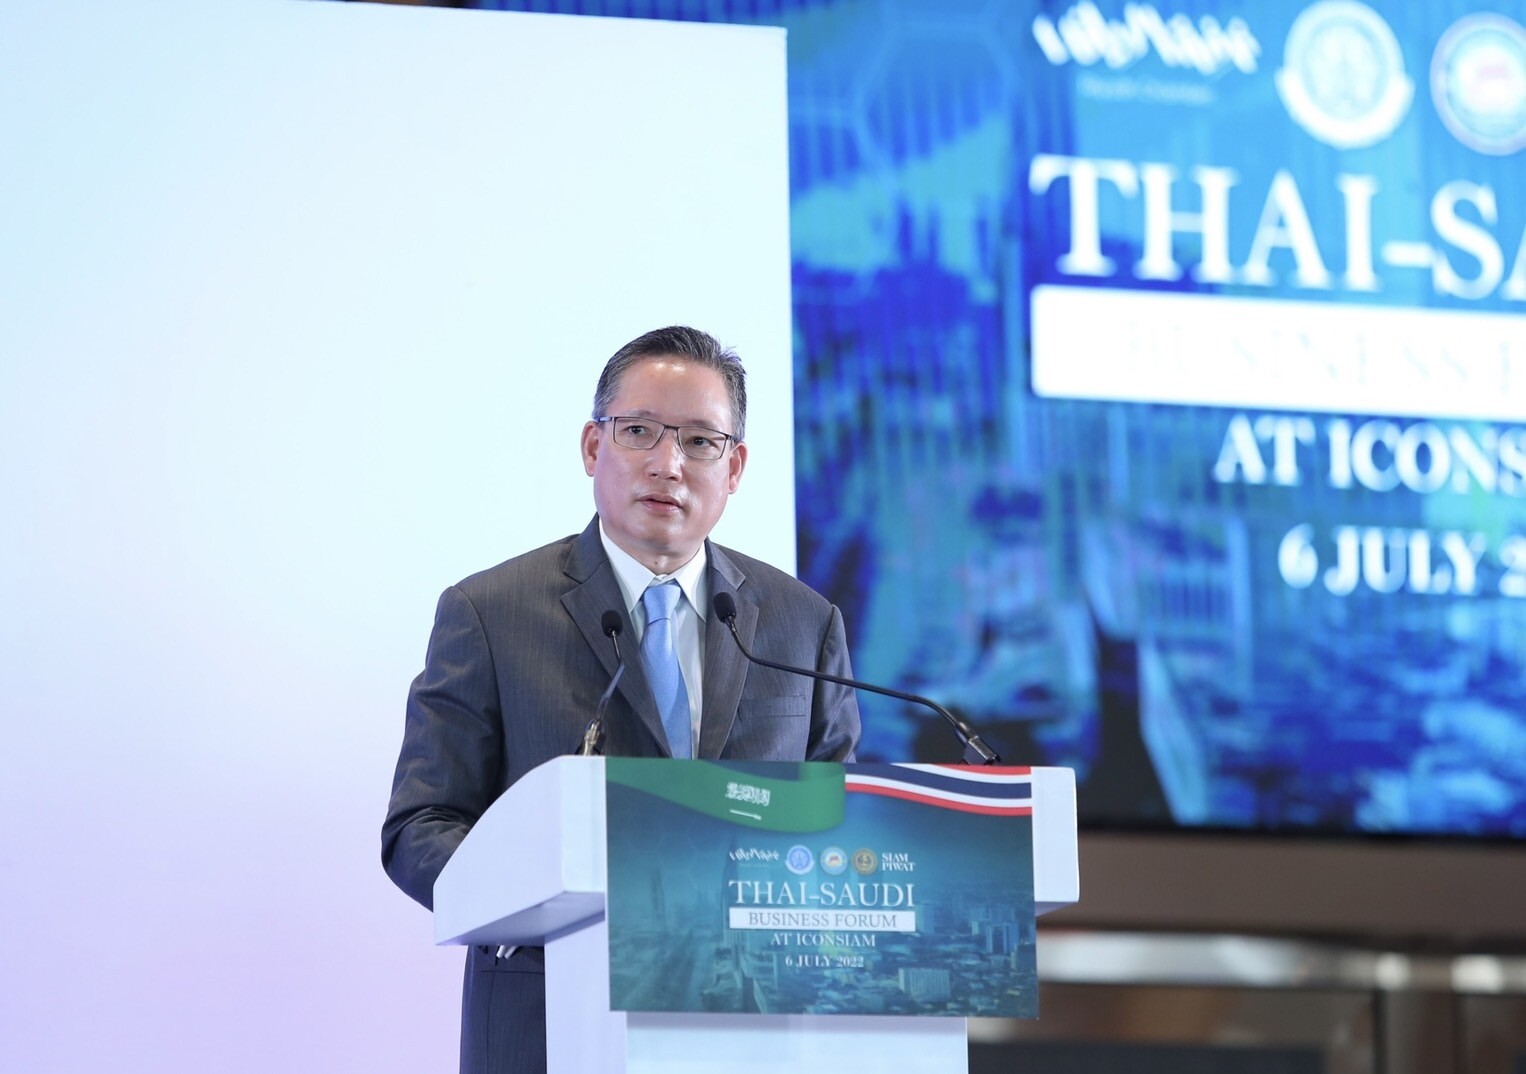  "สมาคมธนาคารไทย" หนุนยกระดับการค้าไทย-ซาอุฯ ชู 2 โครงการเพิ่มศักยภาพแข่งขันผู้นำเข้า-ส่งออก ดันเศรษฐกิจเติบโต